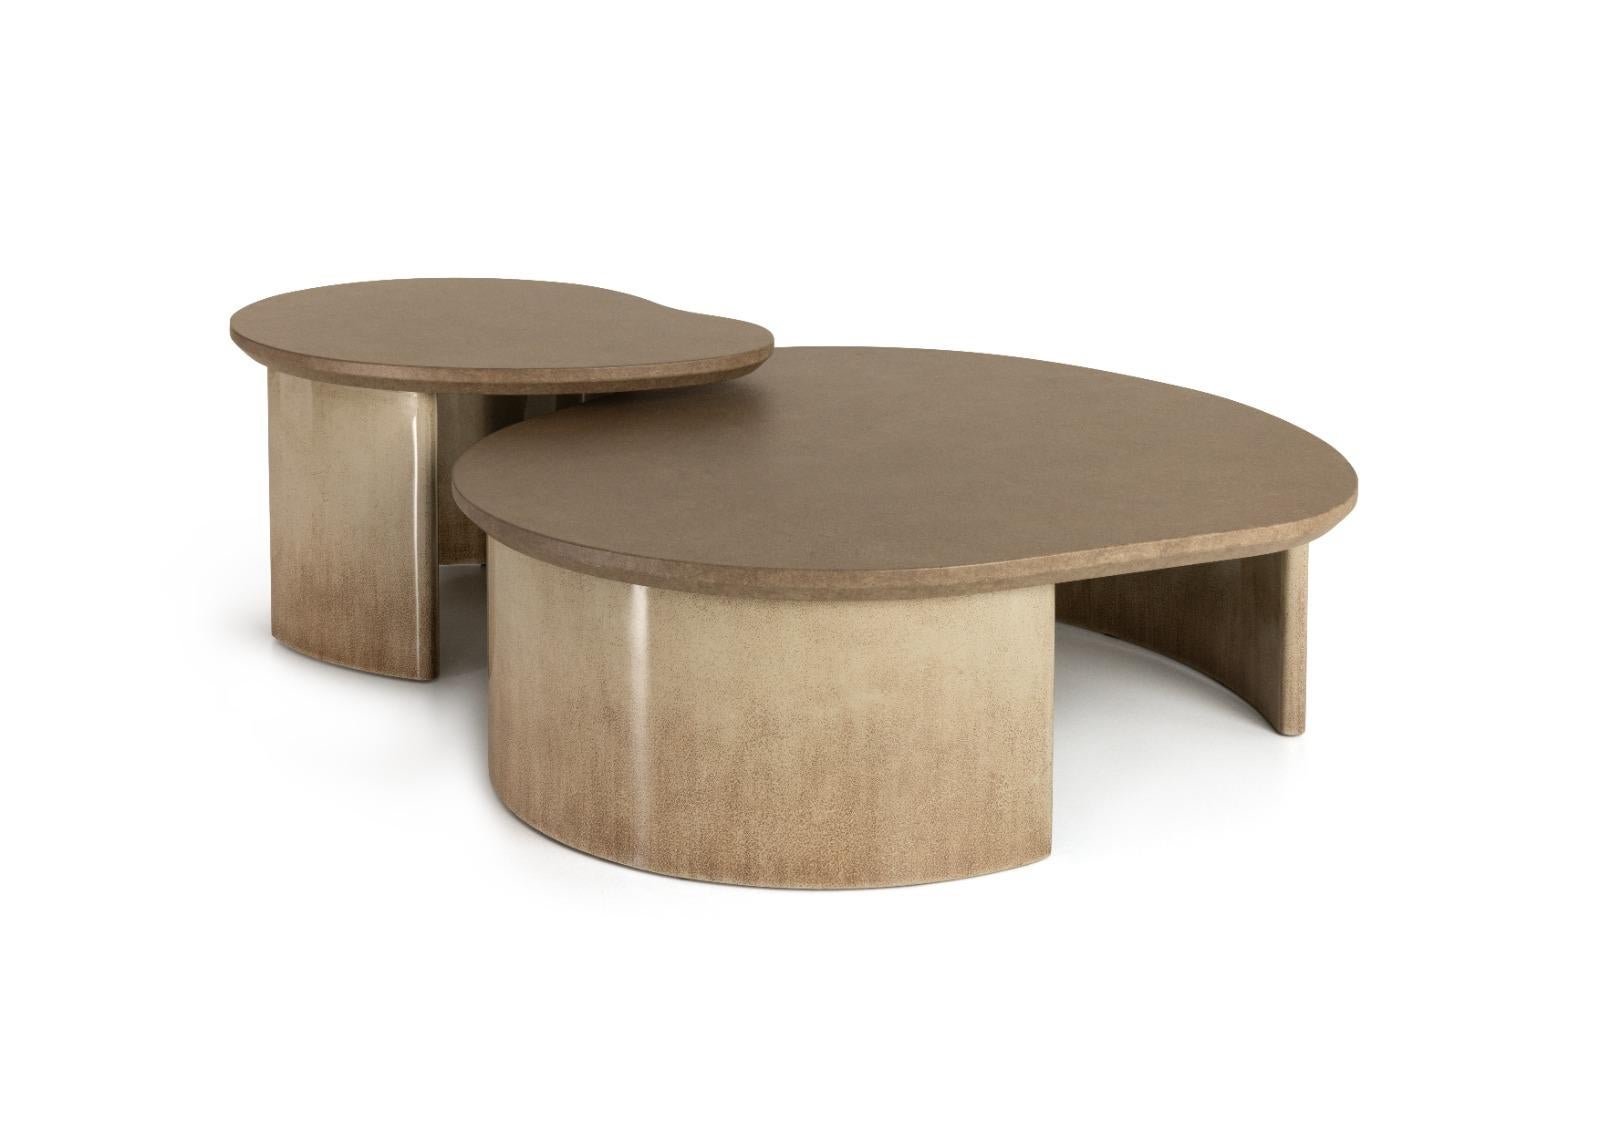 Petite table basse Amorphous Taş par Ekin Varon
Dimensions : D 80 x L 75 x H 35 cm. 
MATERIAL : Laque brillante à motifs sur bois.

Disponible en deux tailles différentes et en lot de 2. Veuillez nous contacter.

Taş s'inspire des différents motifs